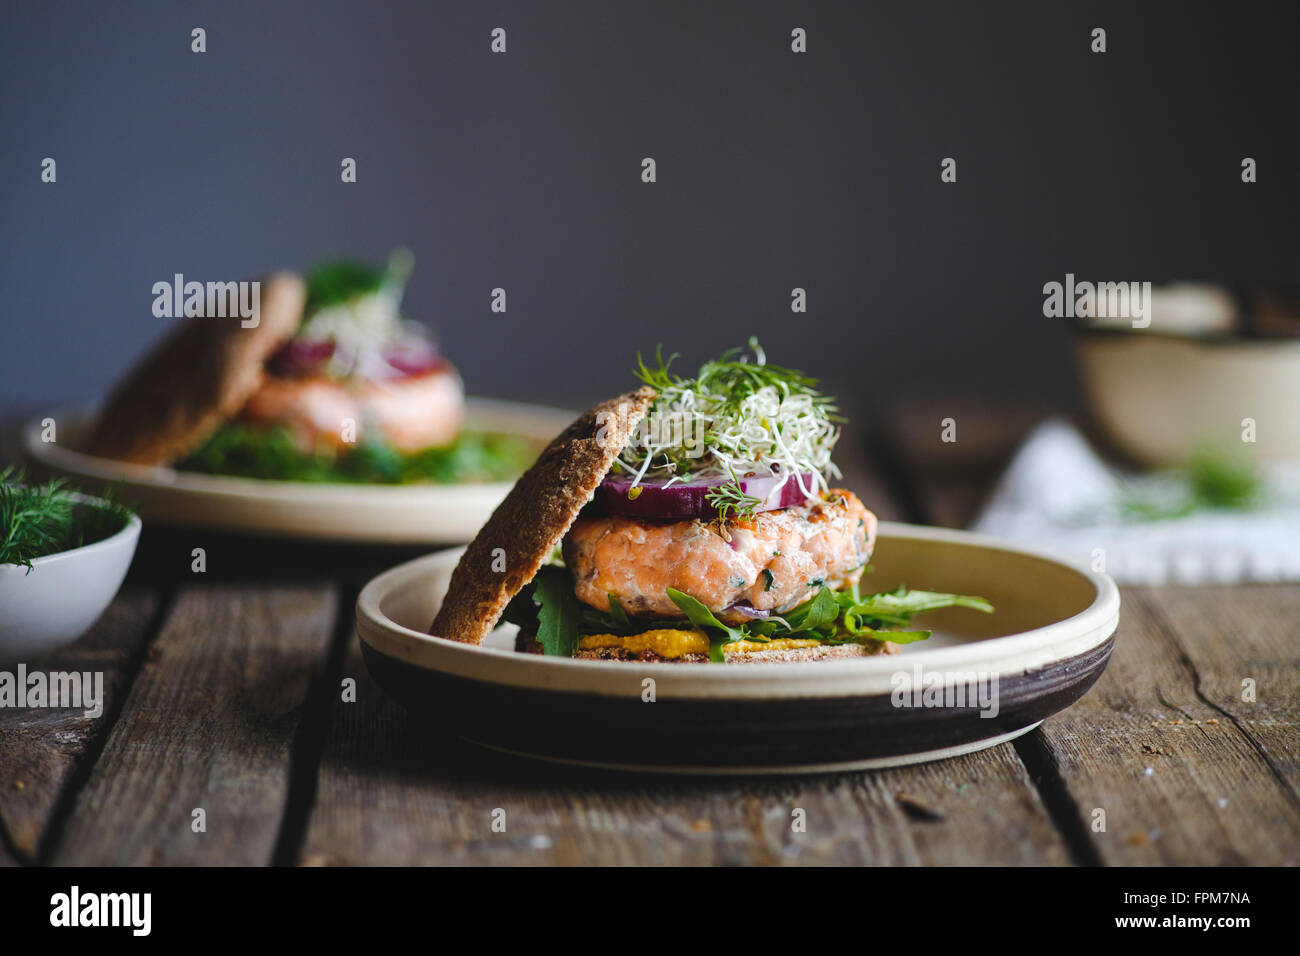 Burgers au saumon pour le déjeuner Banque D'Images